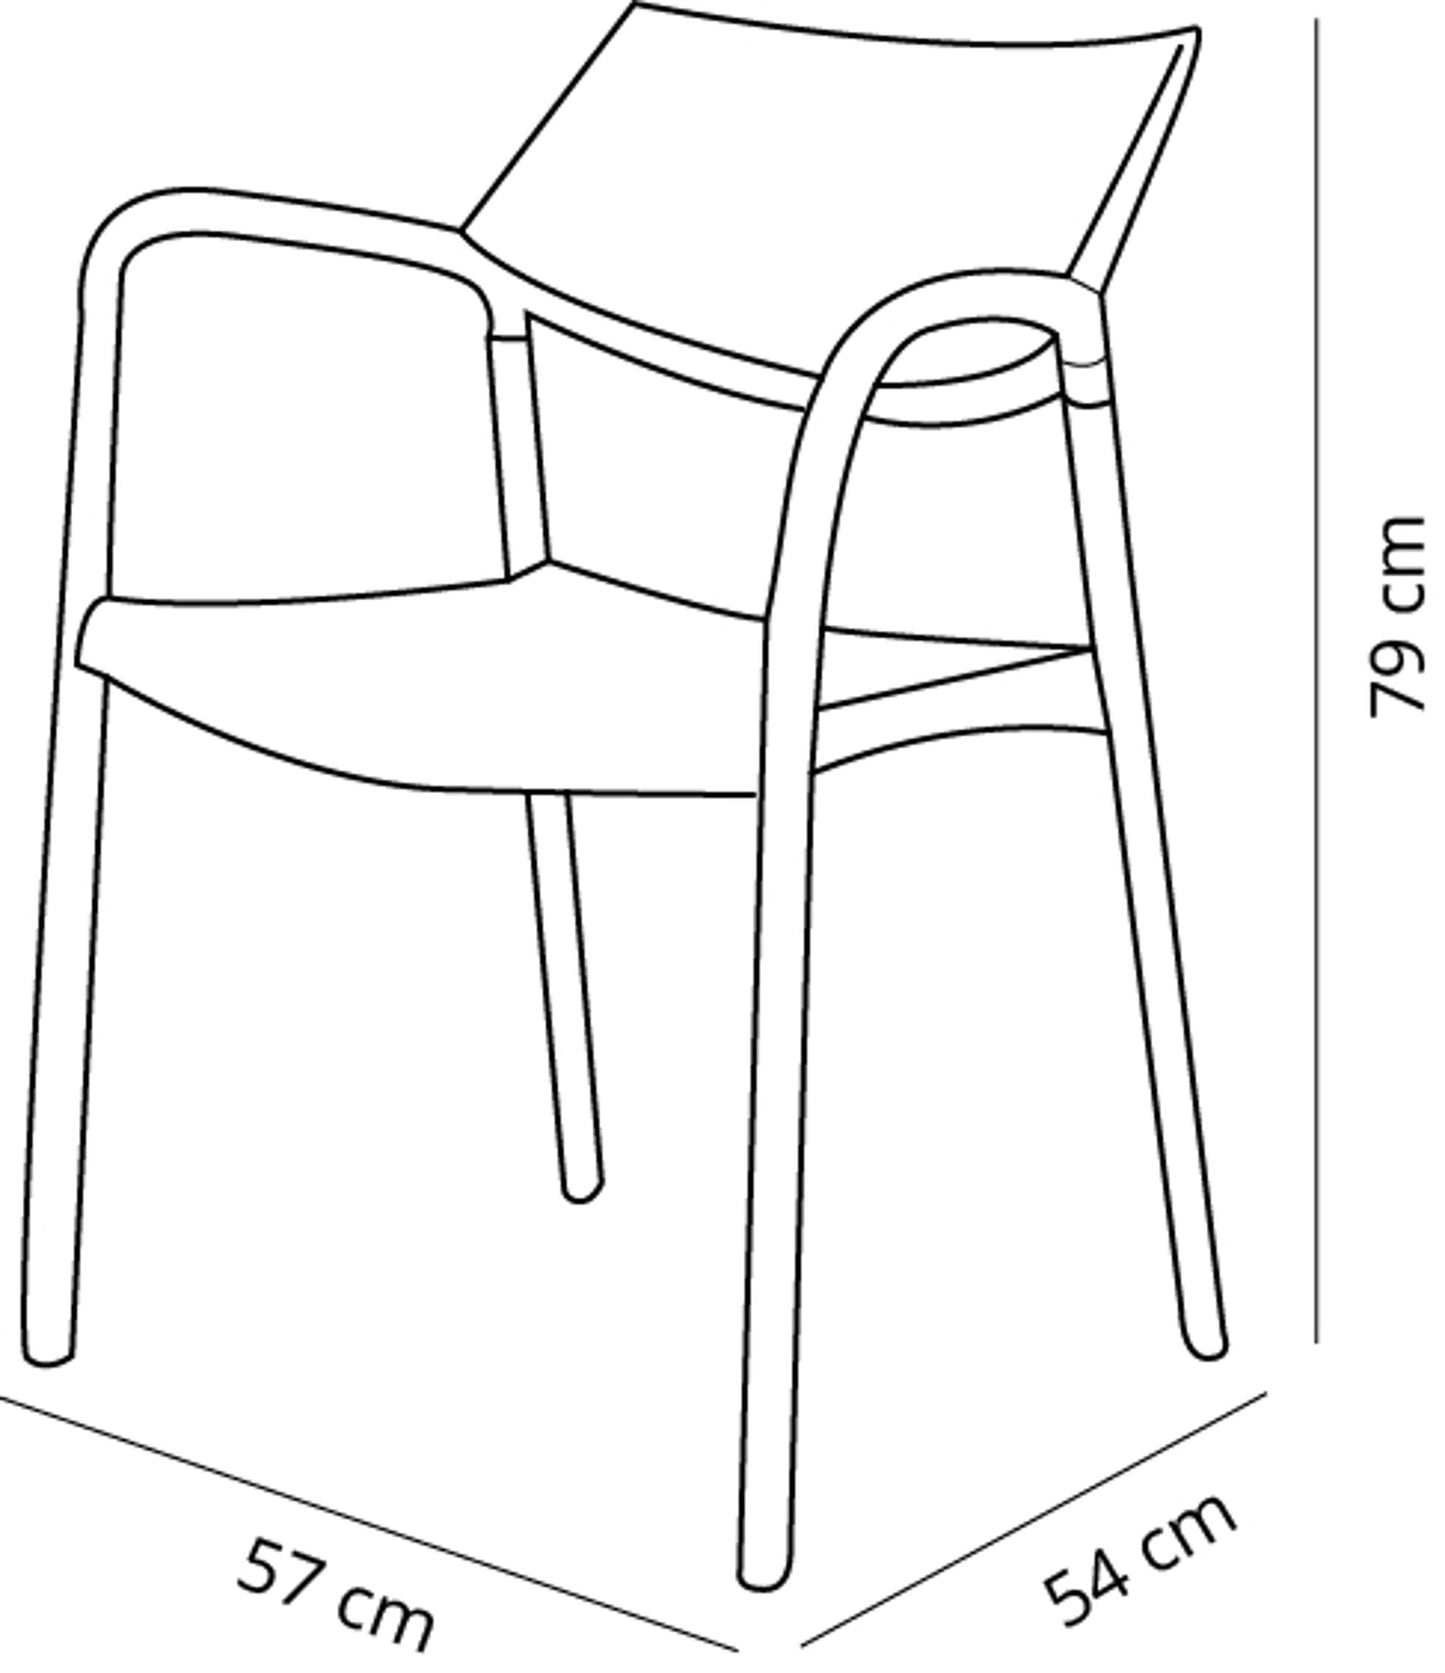 Resol splash aire set 2 silla con brazos interior, exterior toscano